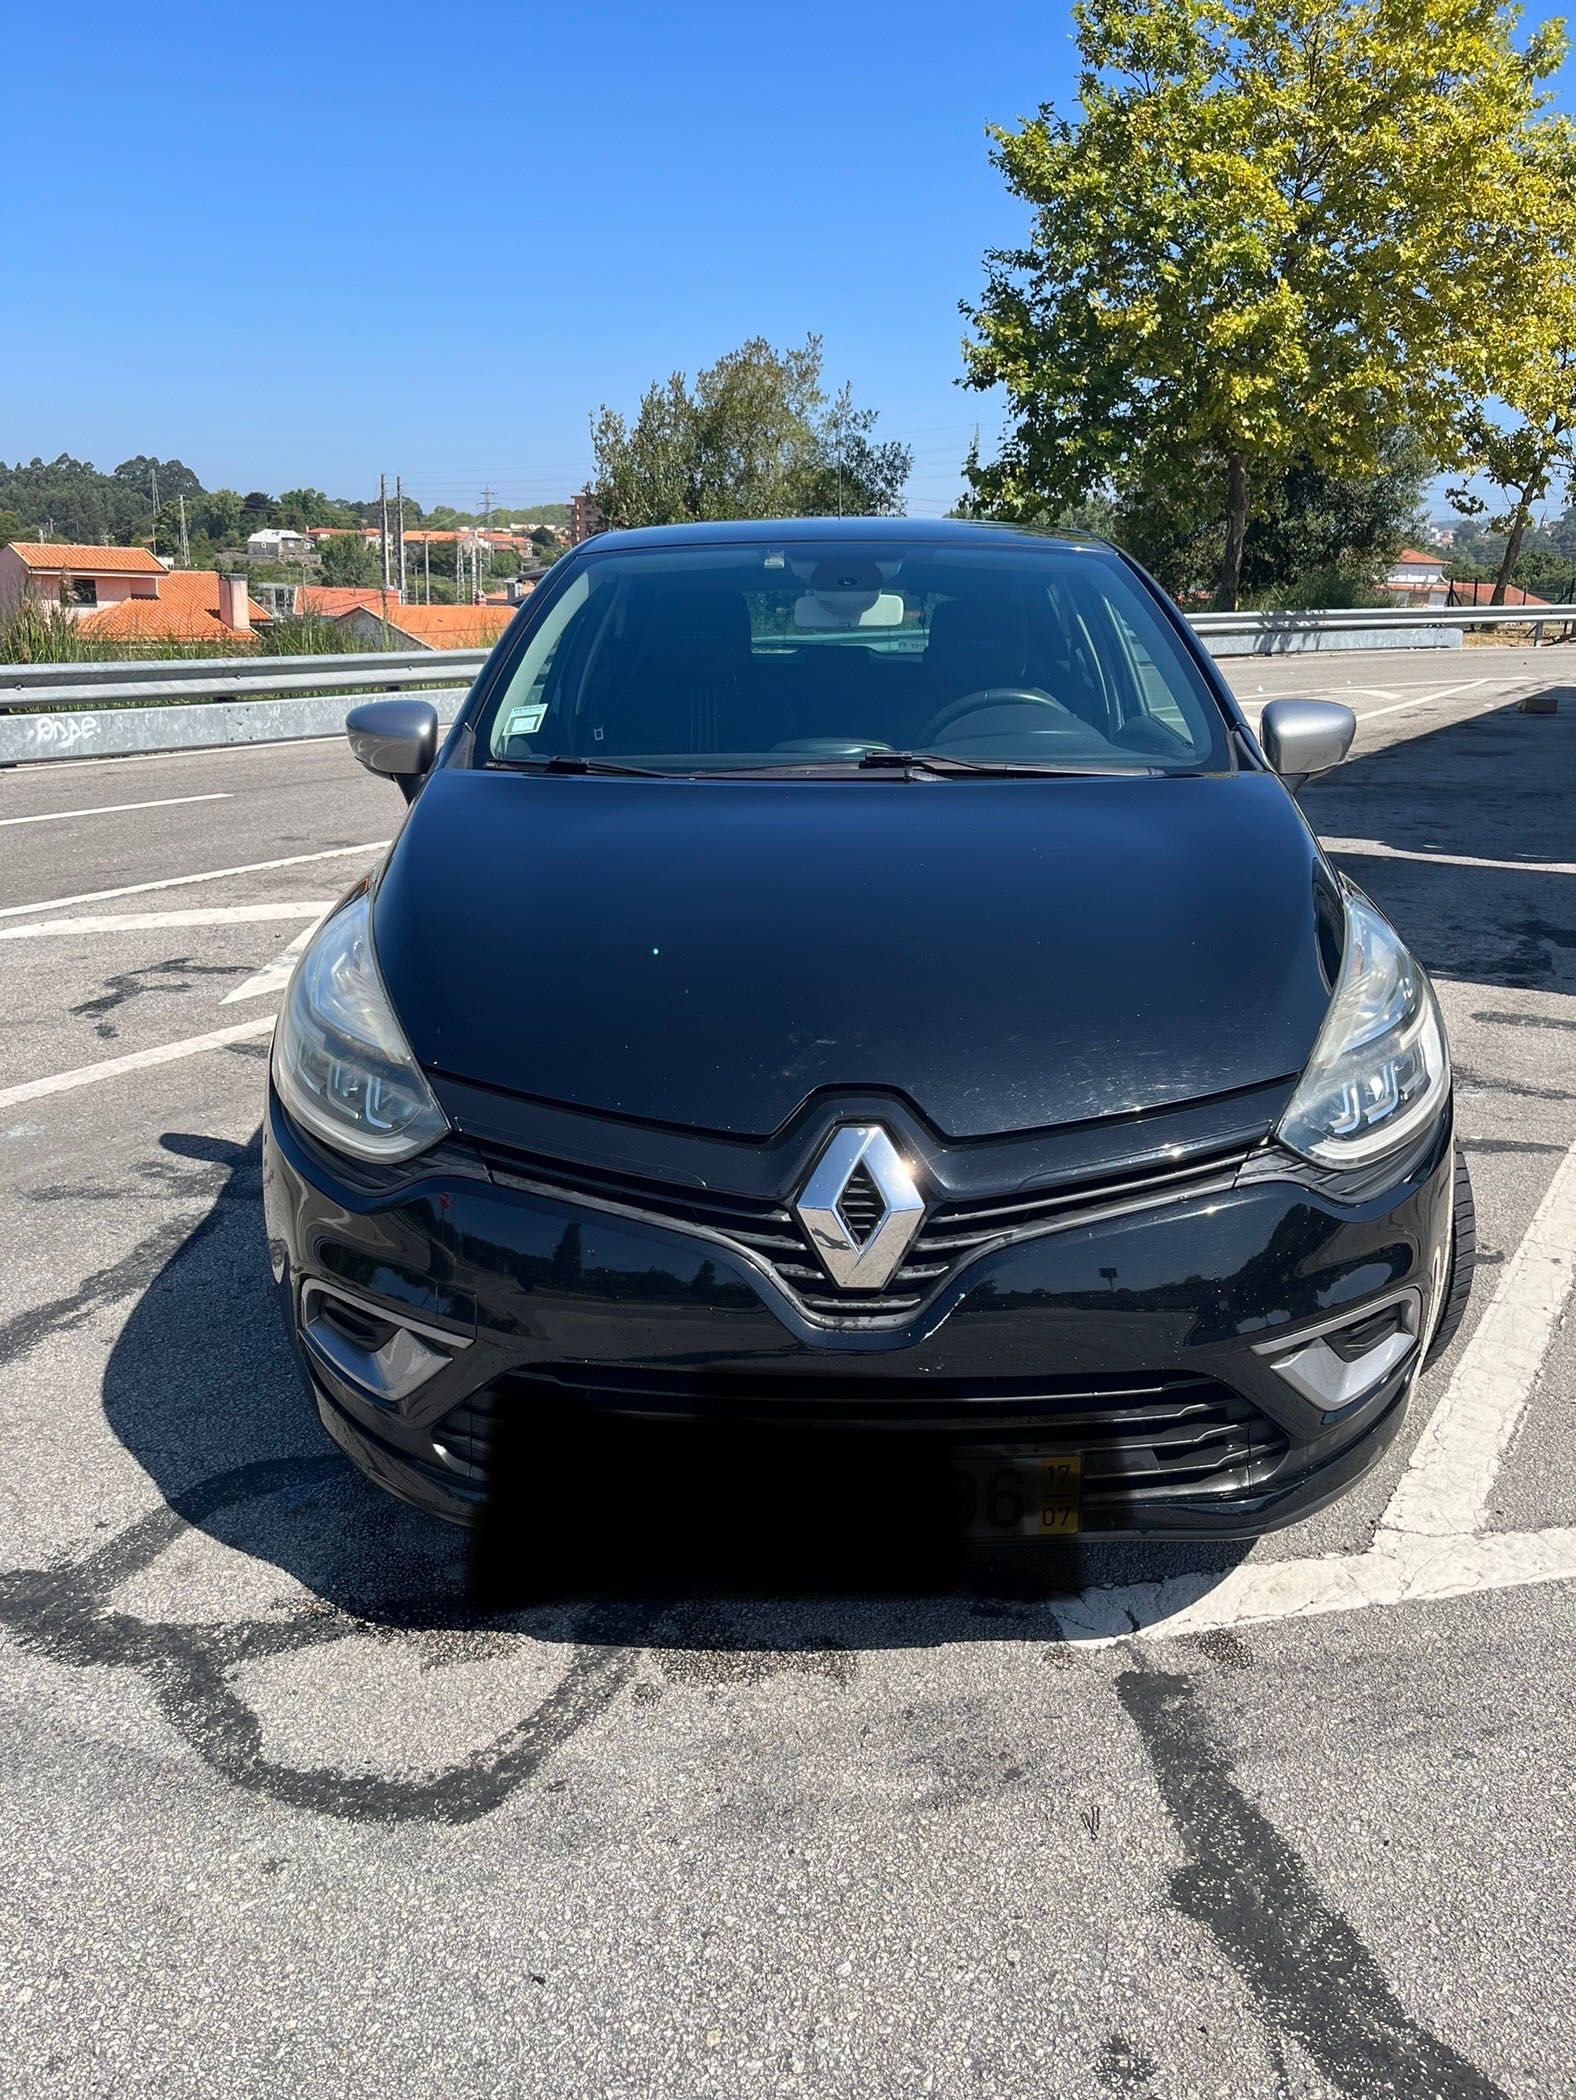 Bluetooth para Opel Grijó E Sermonde • OLX Portugal